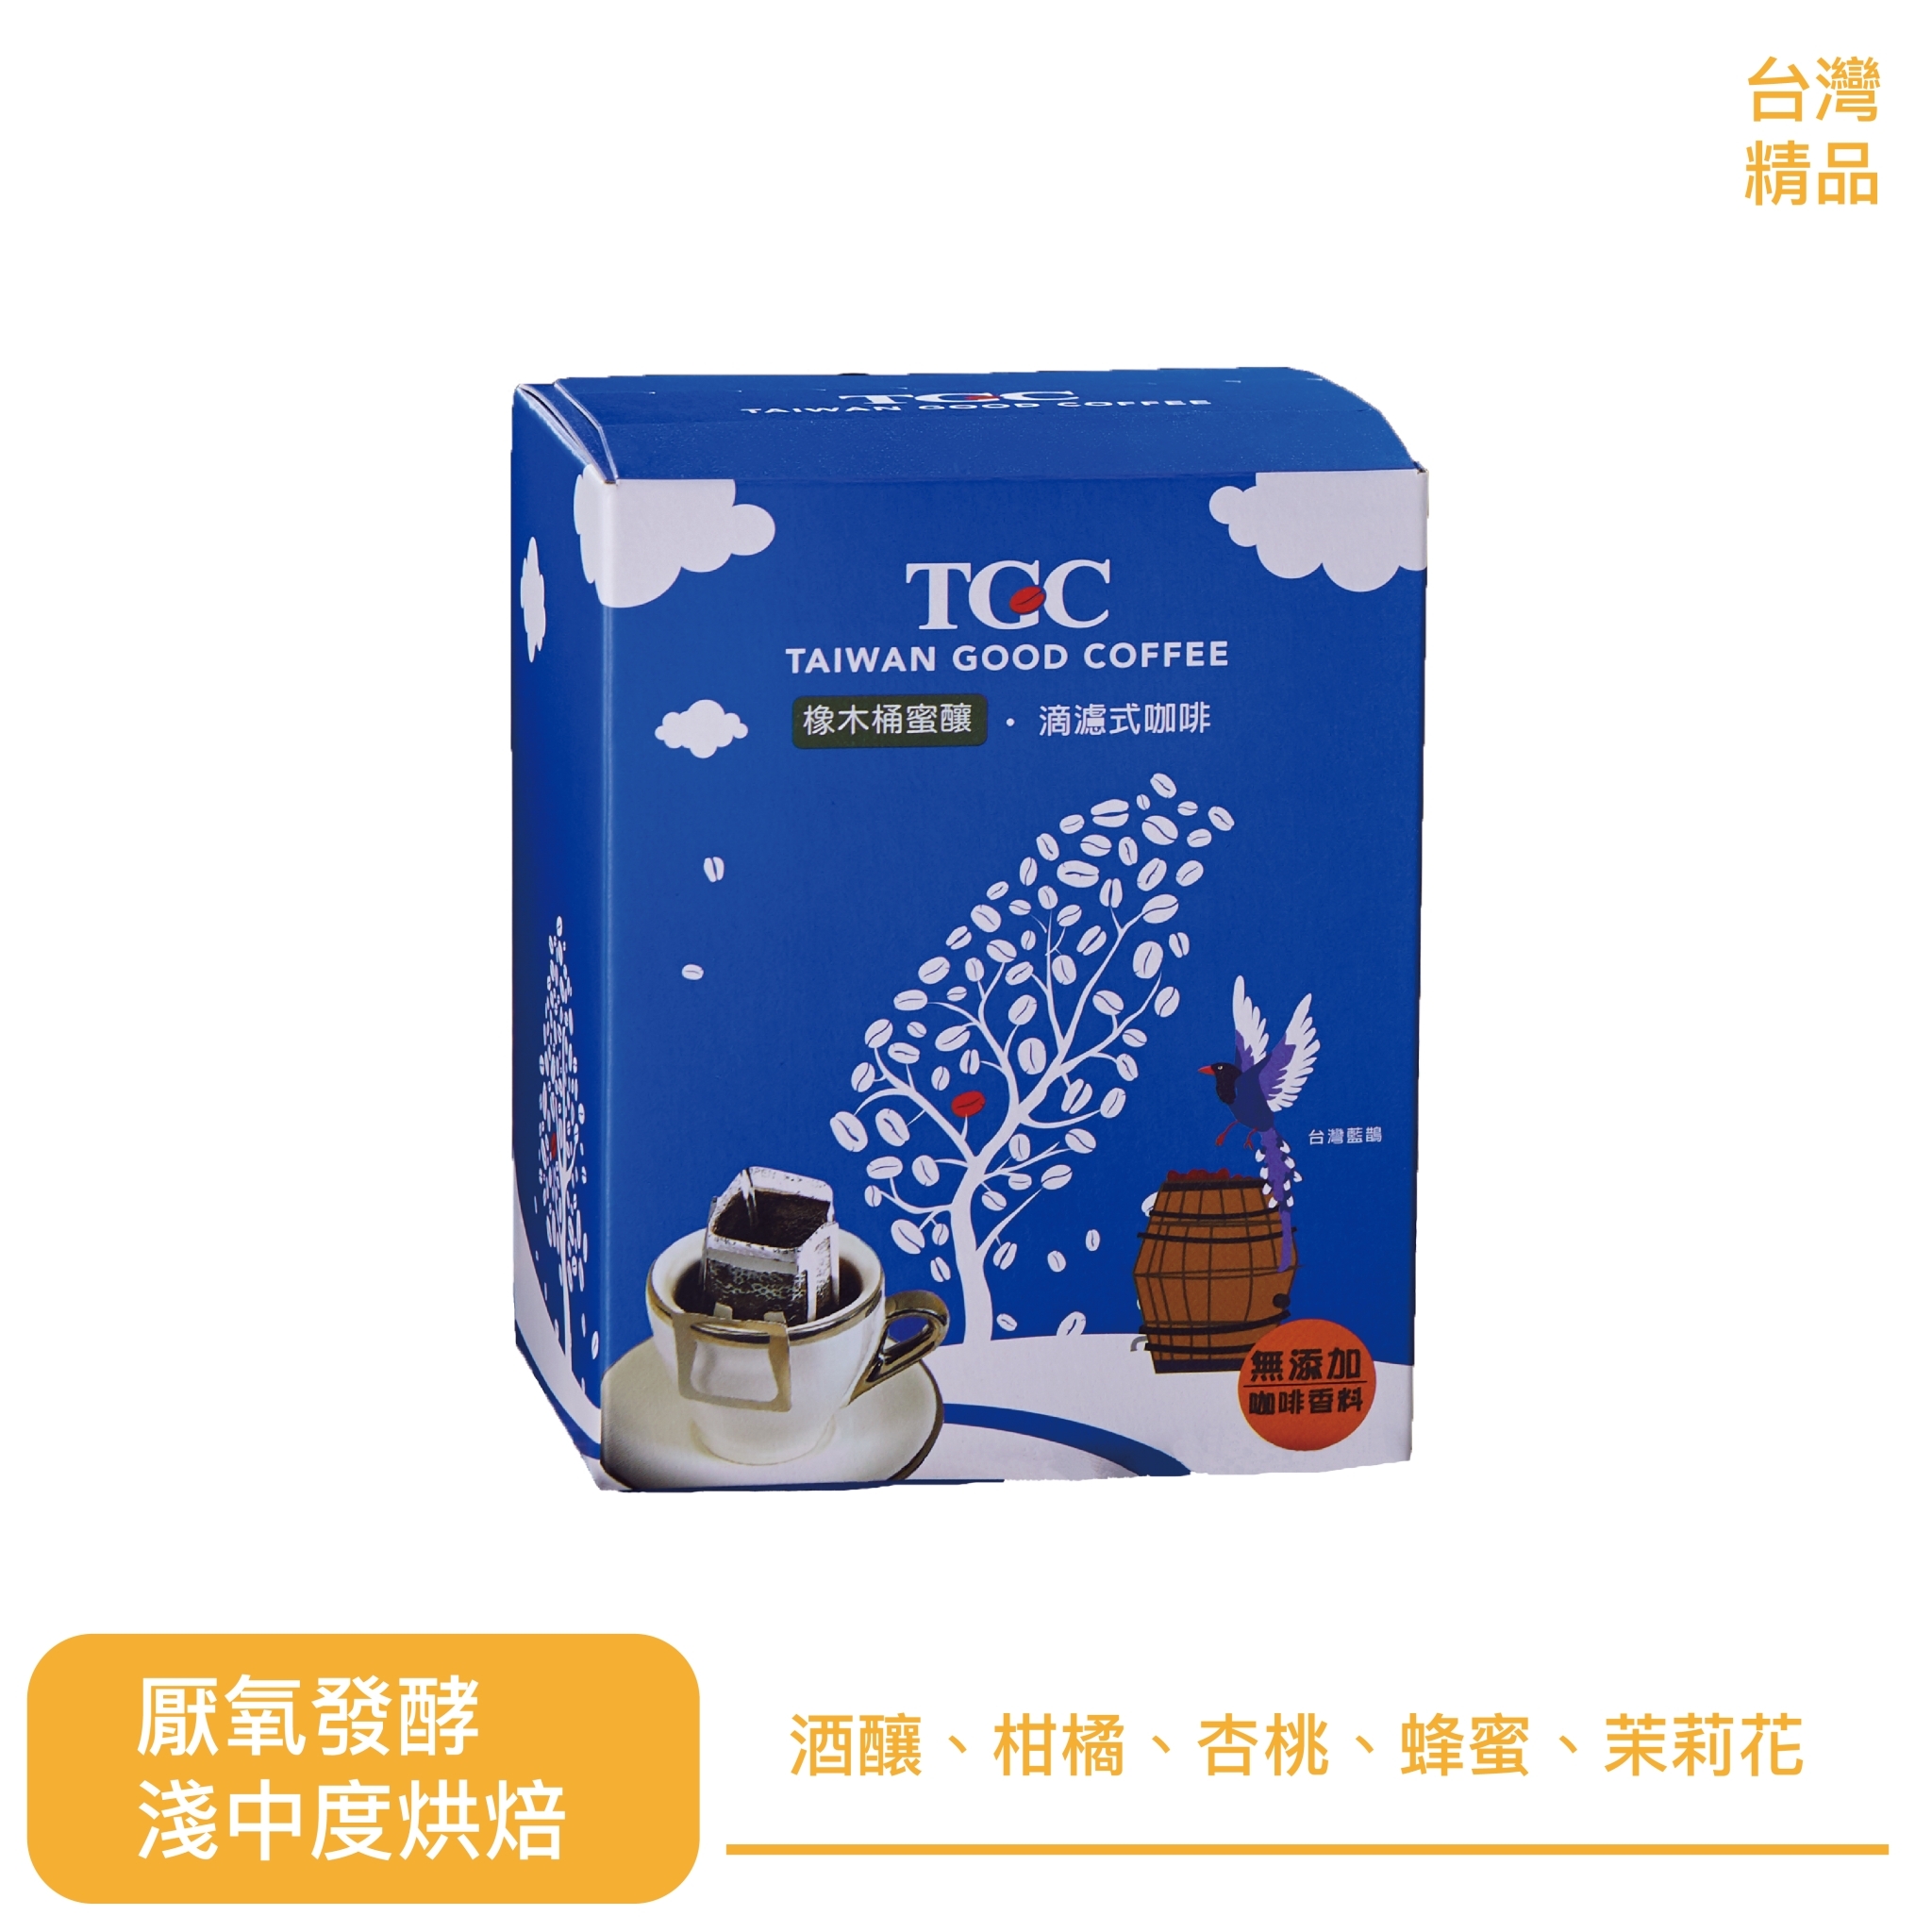 【TGC】台灣橡木桶蜜釀滴濾咖啡